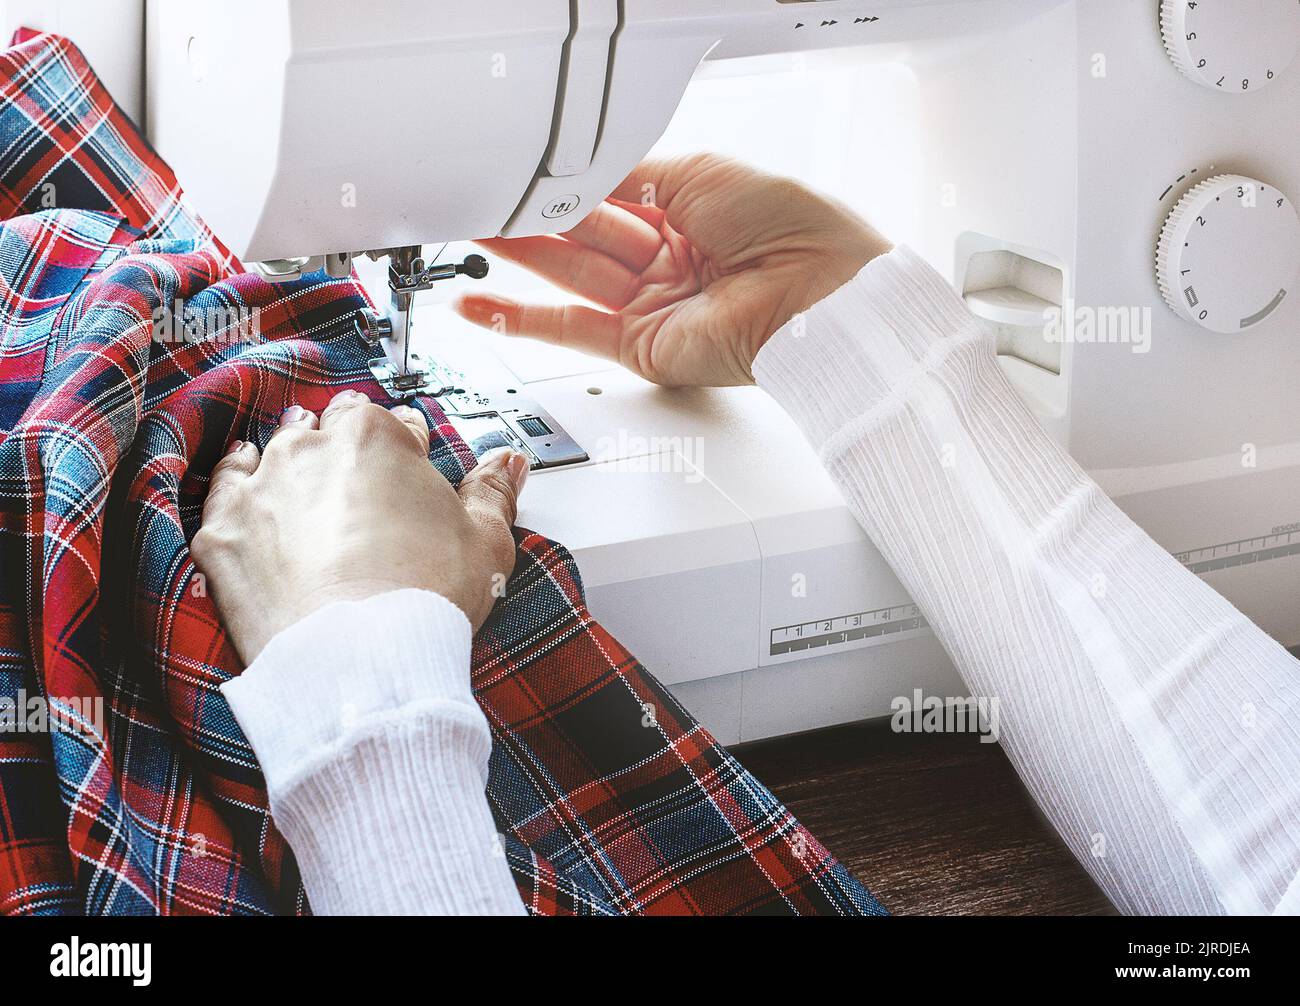 Mani femminili nel processo di cucire un panno colorato sulla macchina da cucire. Concetto di stile di vita Foto Stock